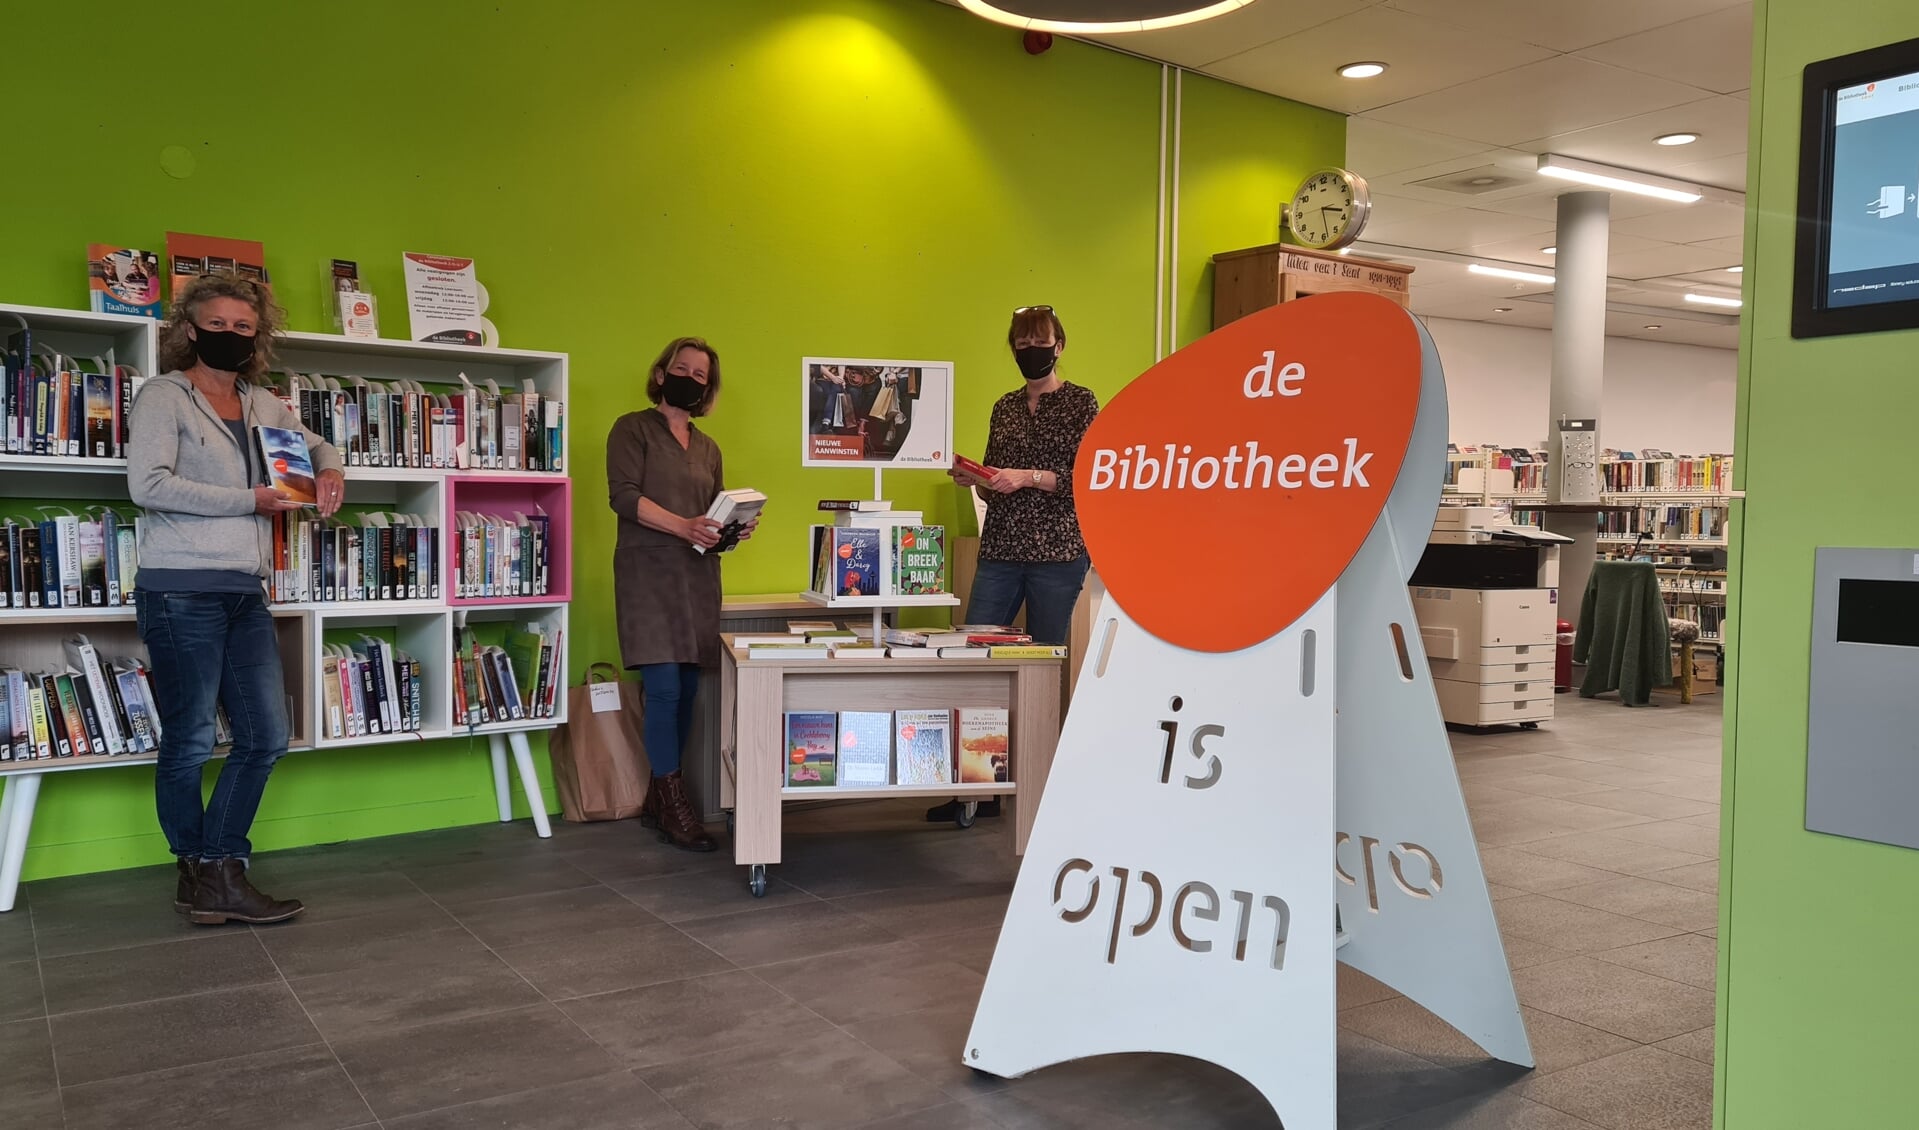 De bibliotheek is open! Na 5 maanden kunnen klanten weer 'gewoon' binnenlopen.